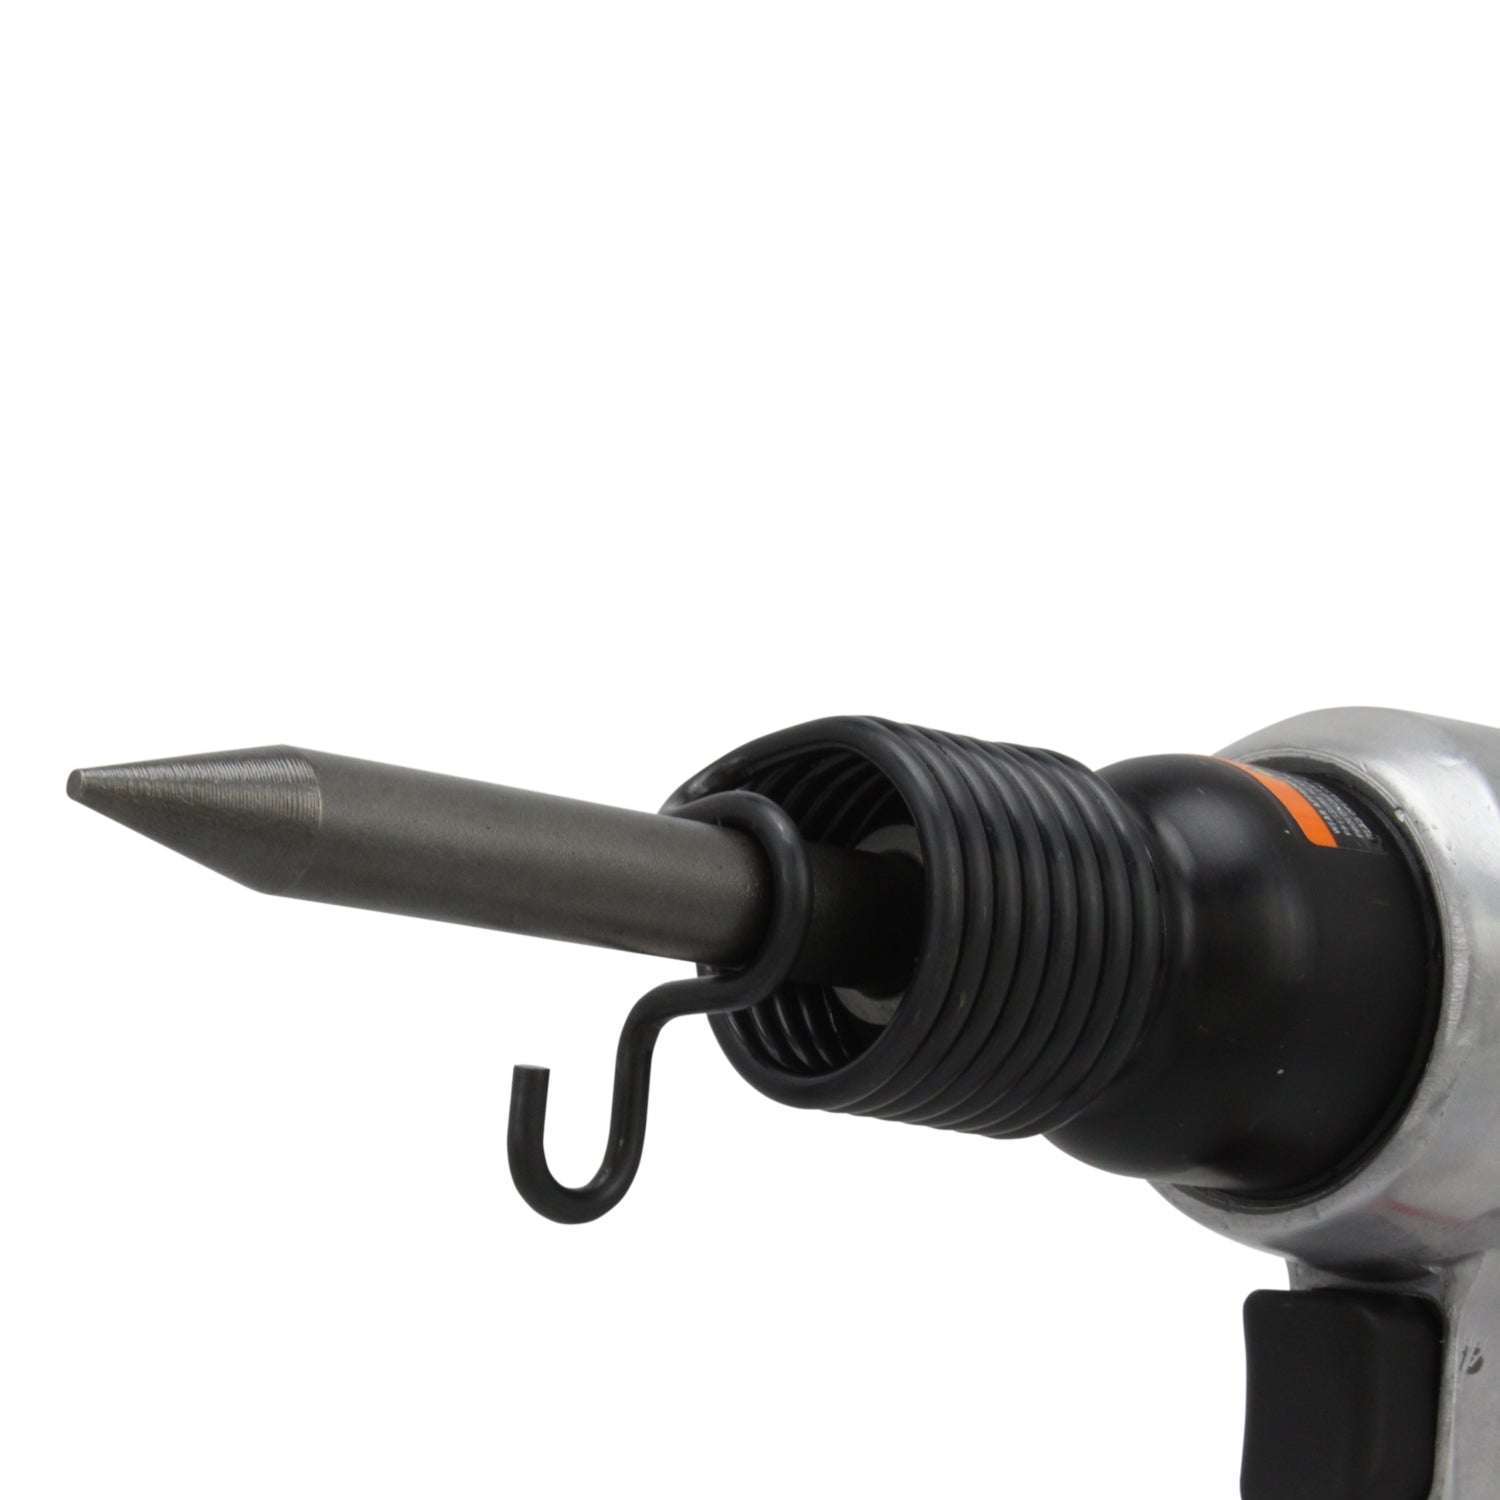 EXELAIR® 44-Pc. Pro Air Tool Accessory Kit, Impact Wrench, Air Ratchet, Die Grinder, Blow Gun, Air Hammer, Dual Air Chuck, Tire Gauge w/ Accessories